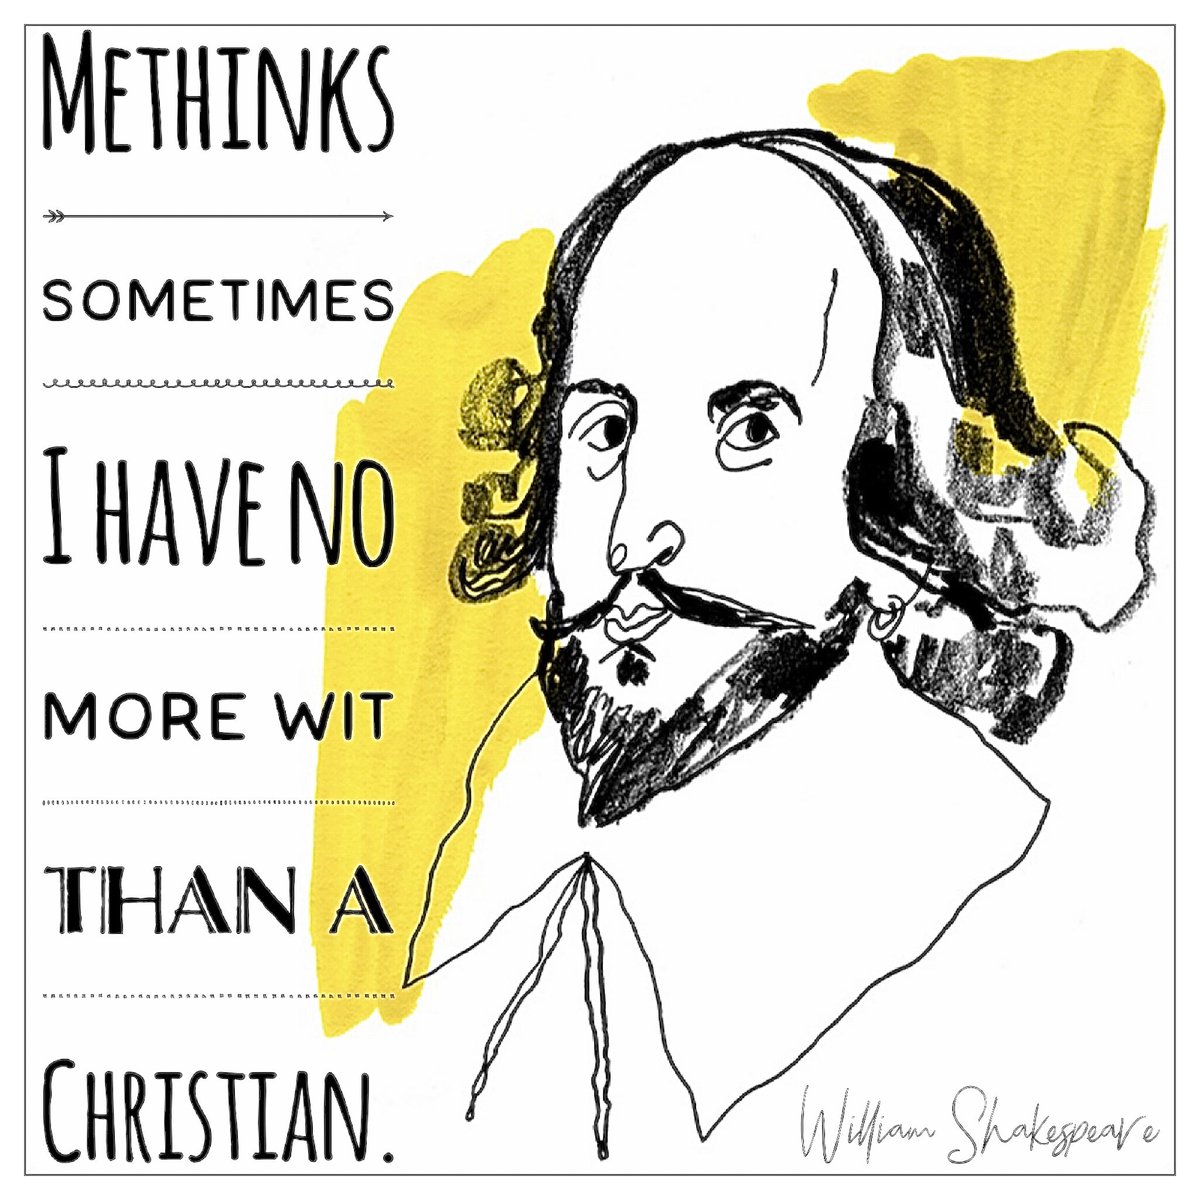 #WilliamShakespeare #Shakespeare
#blackatheist #BlackExistentialism  #atheist  #antireligion  #atheism